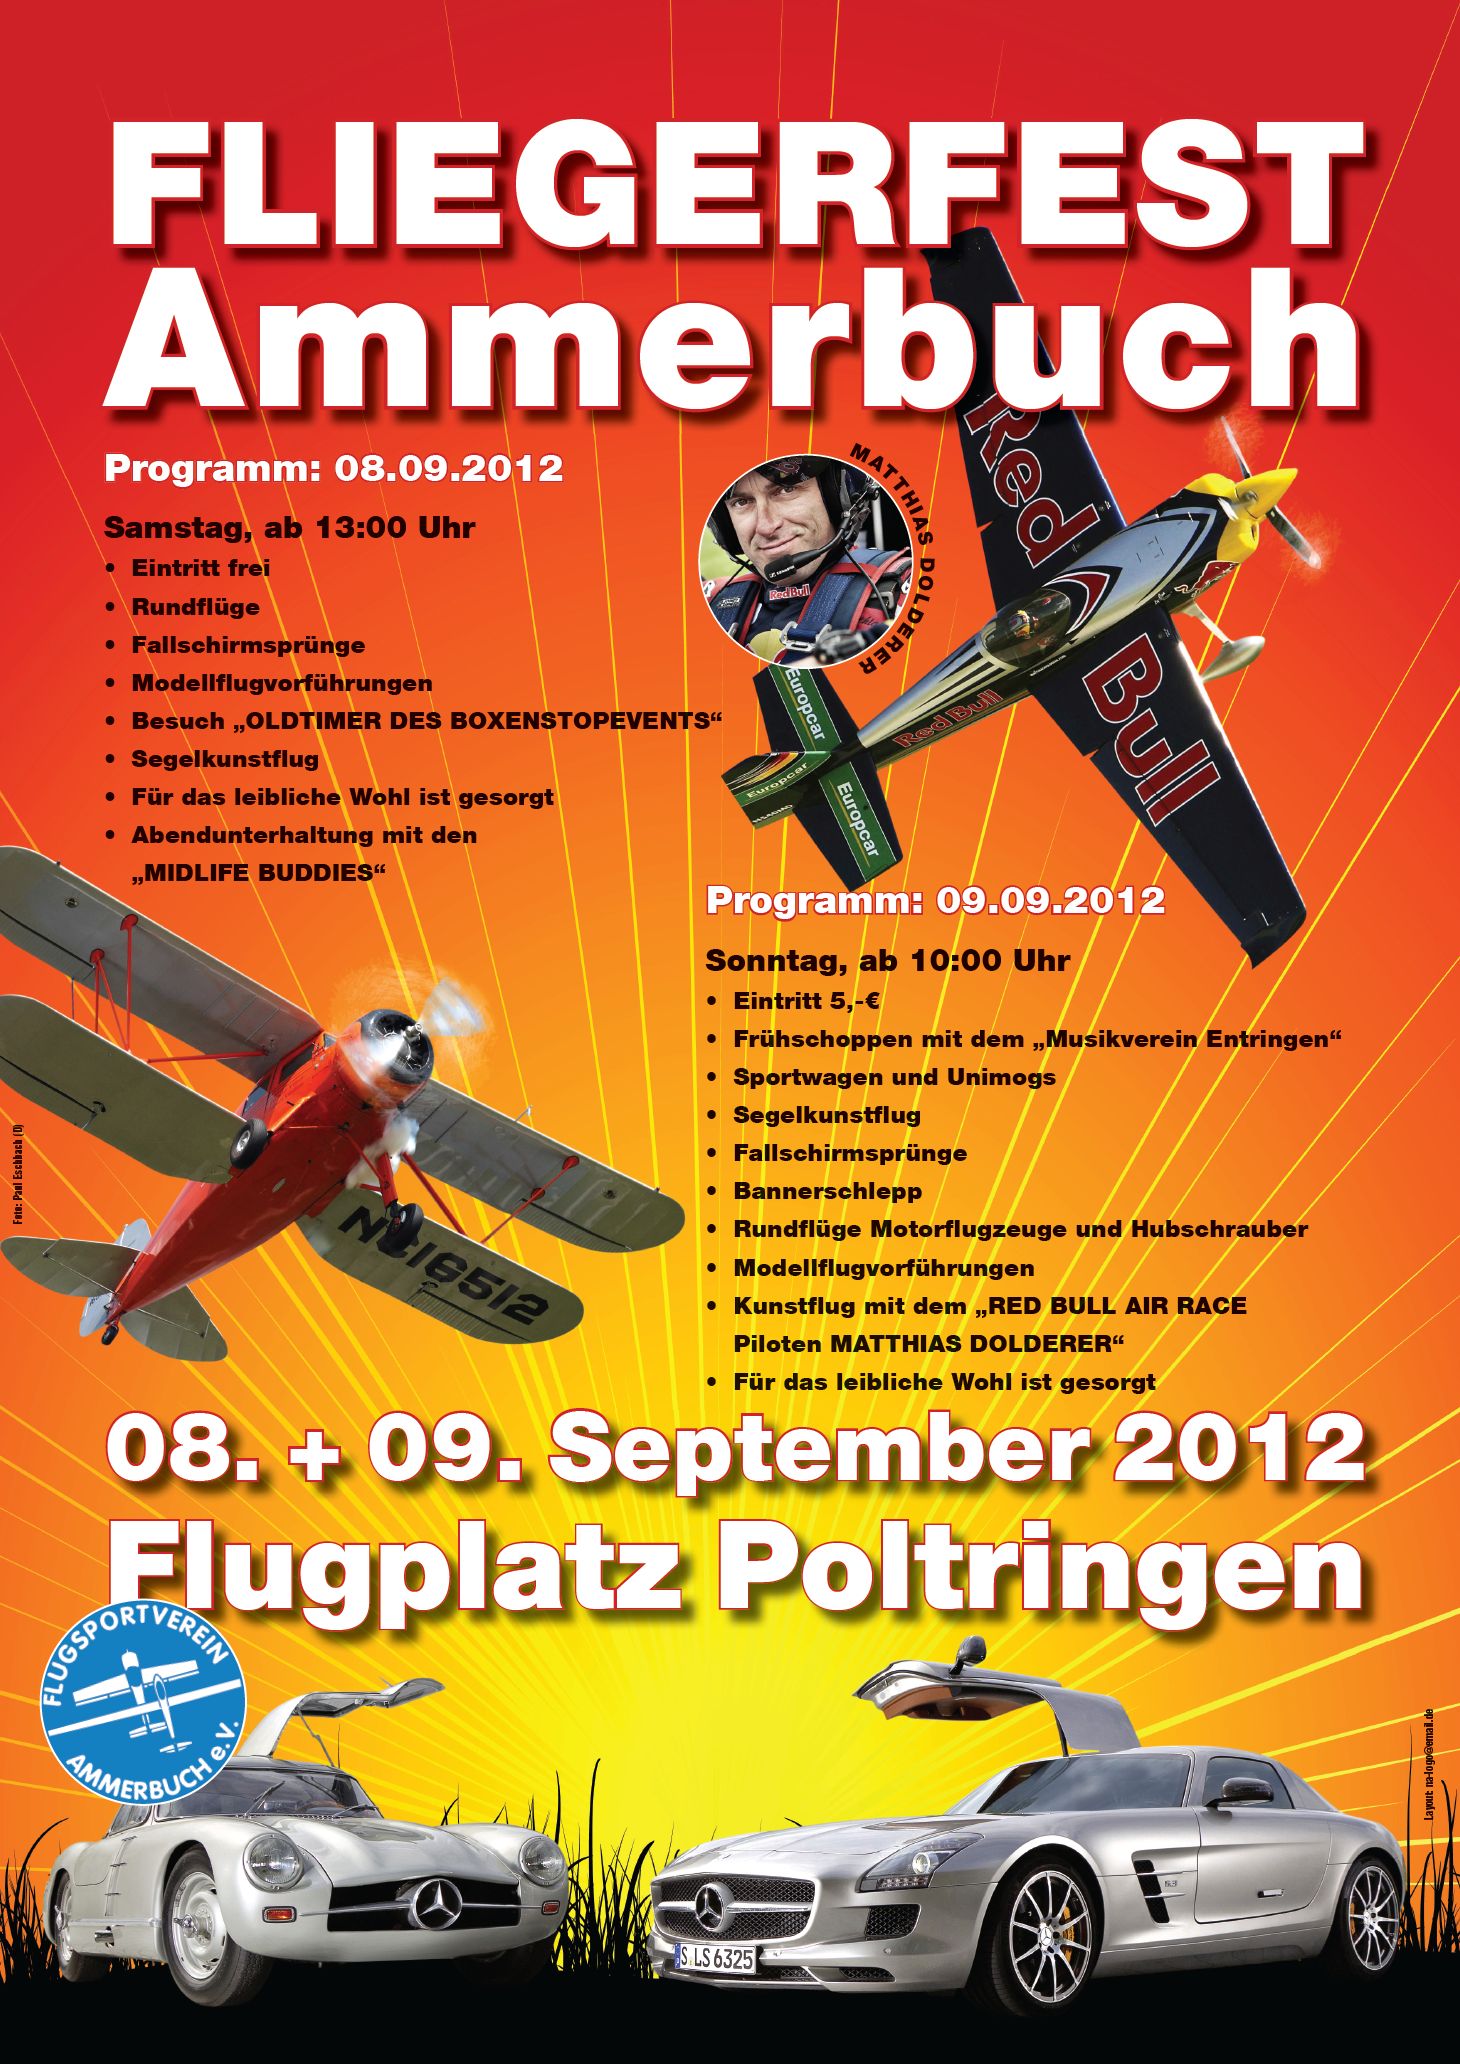 Fliegerfest Ammerbuch 2012